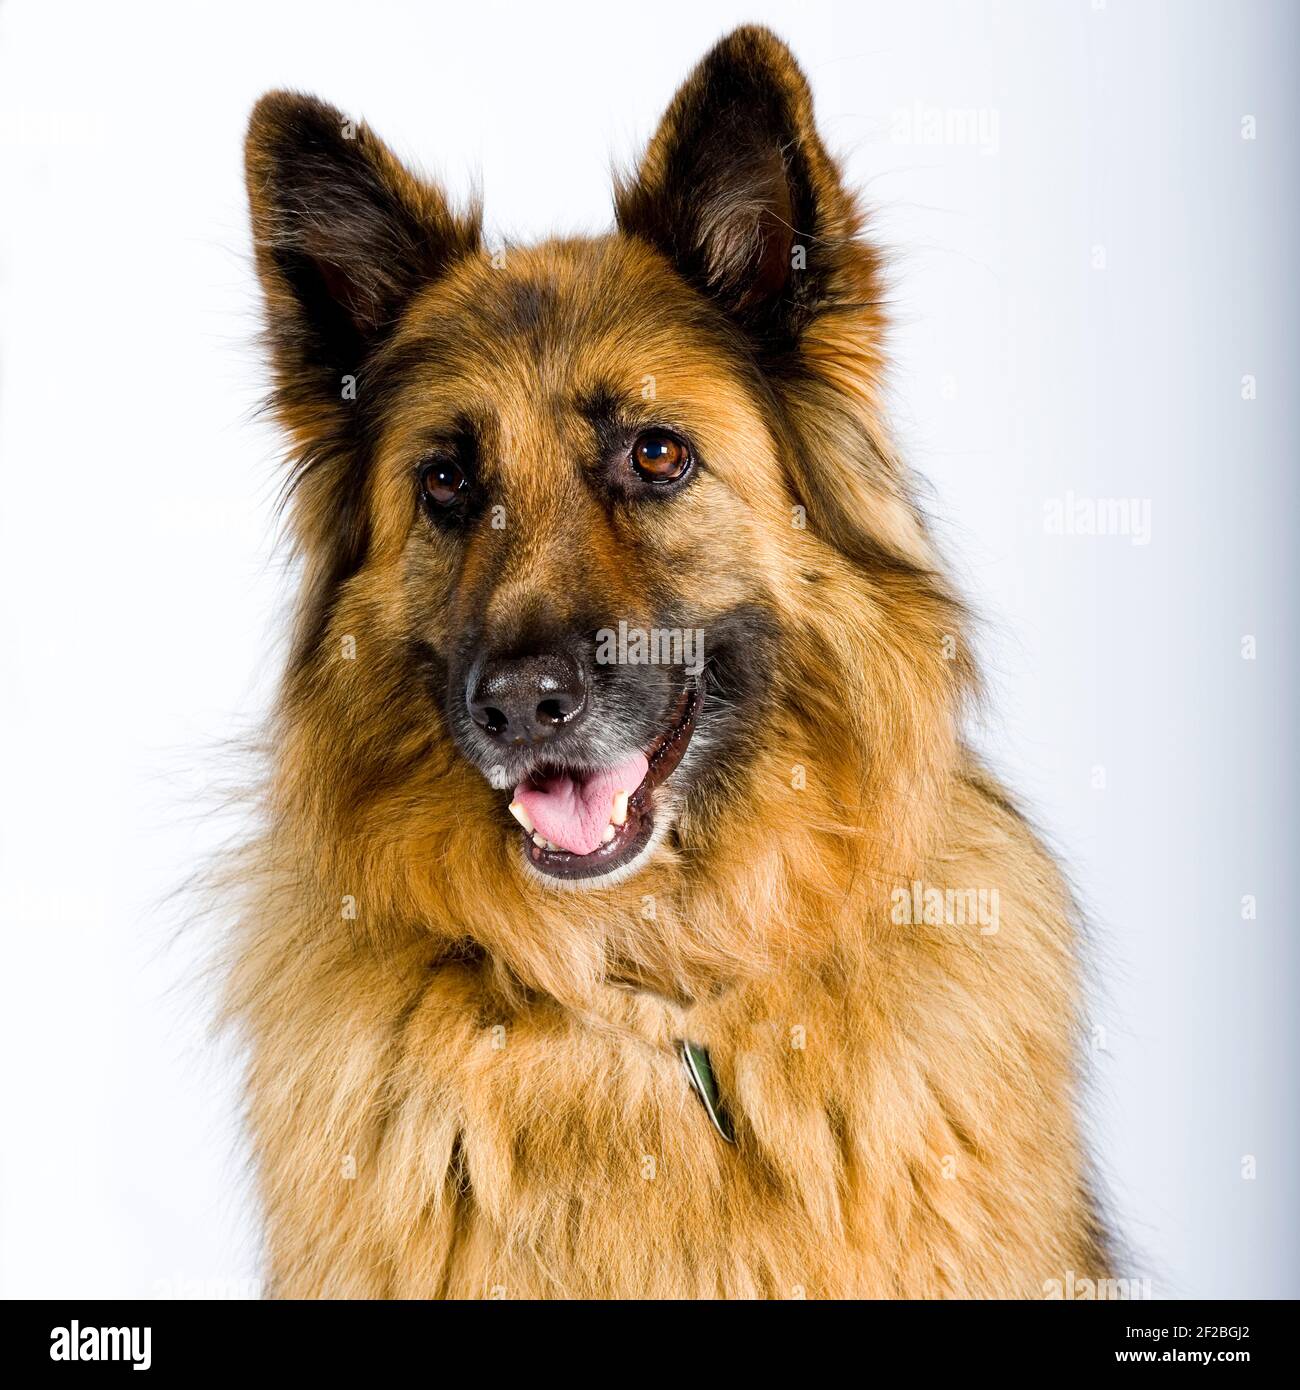 german shepherd dog, studio Stock Photo